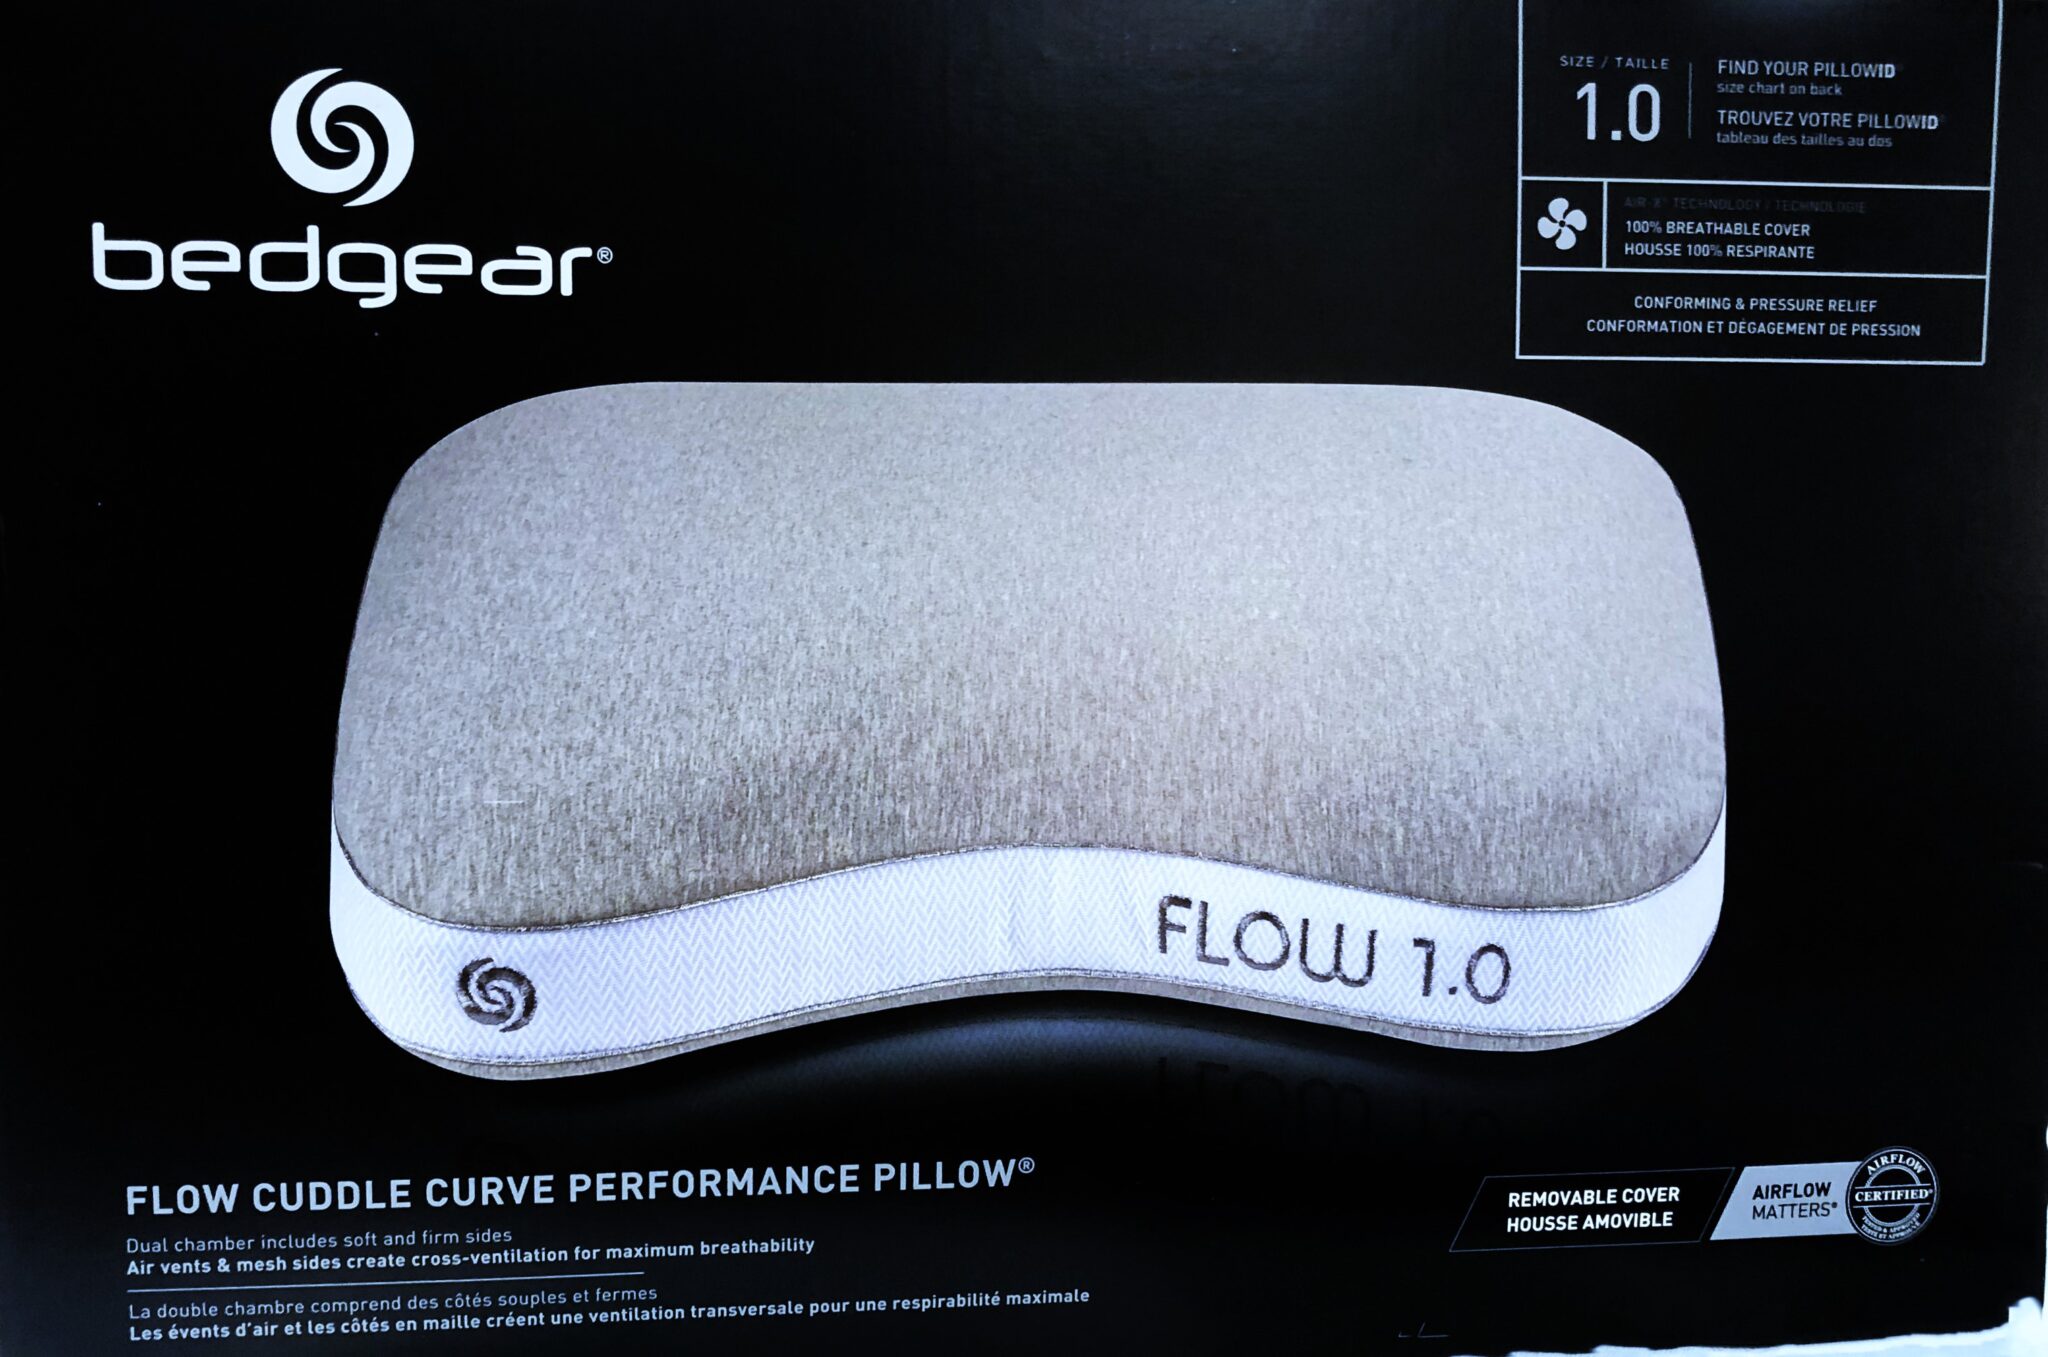 Flow Cuddle 1.0 Pillow